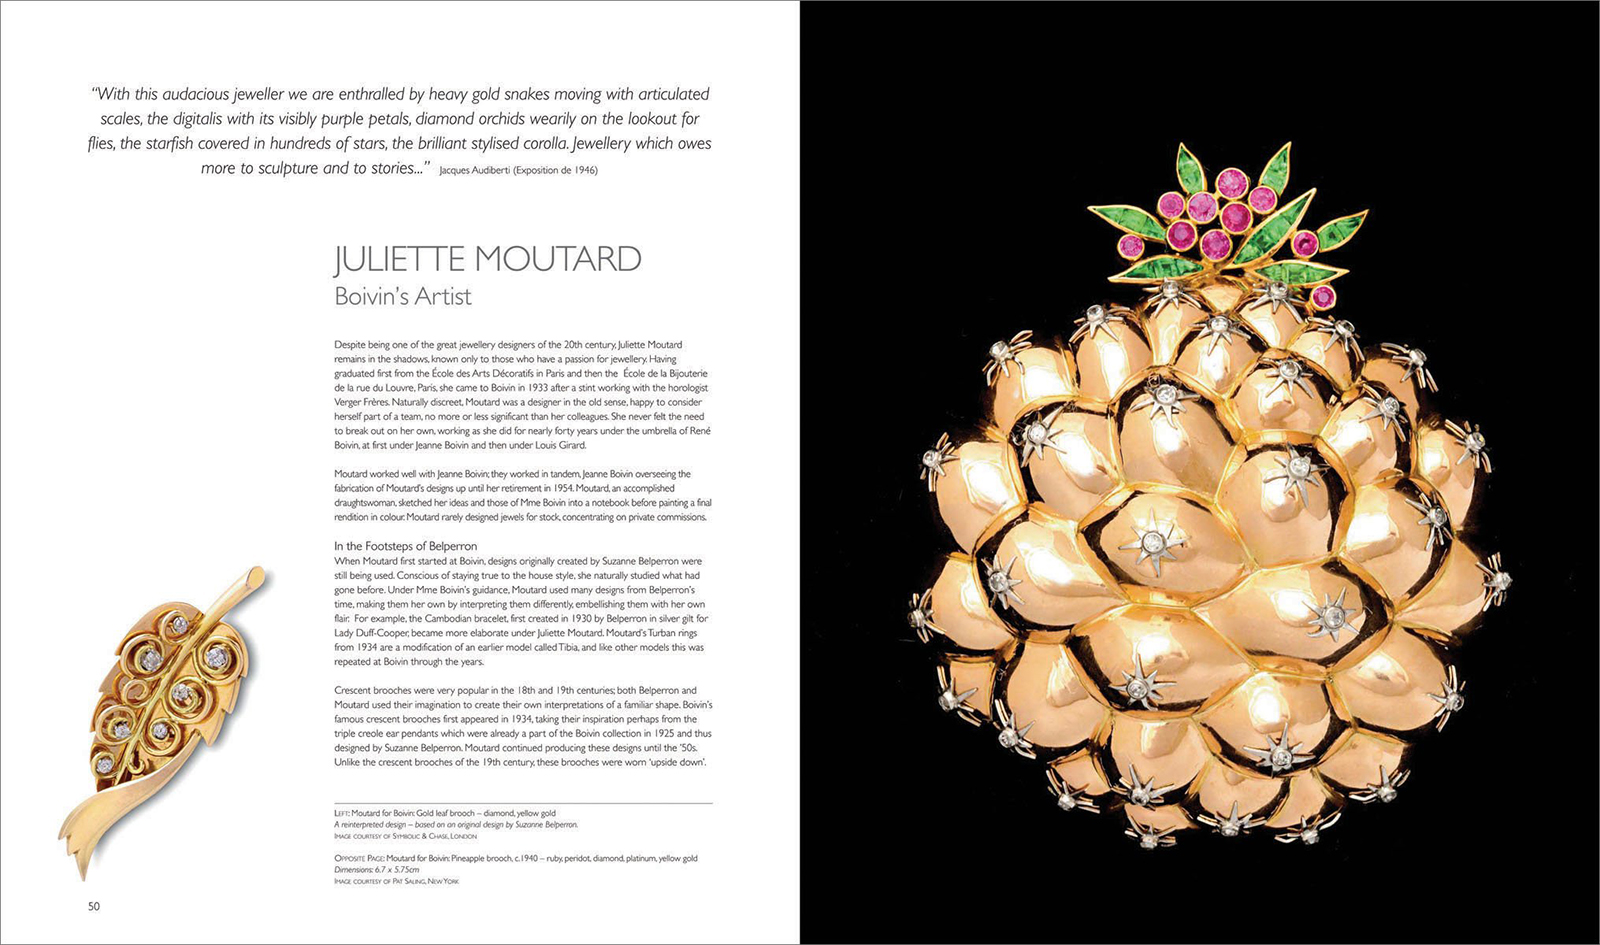 Pages from 'Women Jewellery Designers' by Juliet Weir-de La Rochefoucauld on Juliette Moutard of Boivin